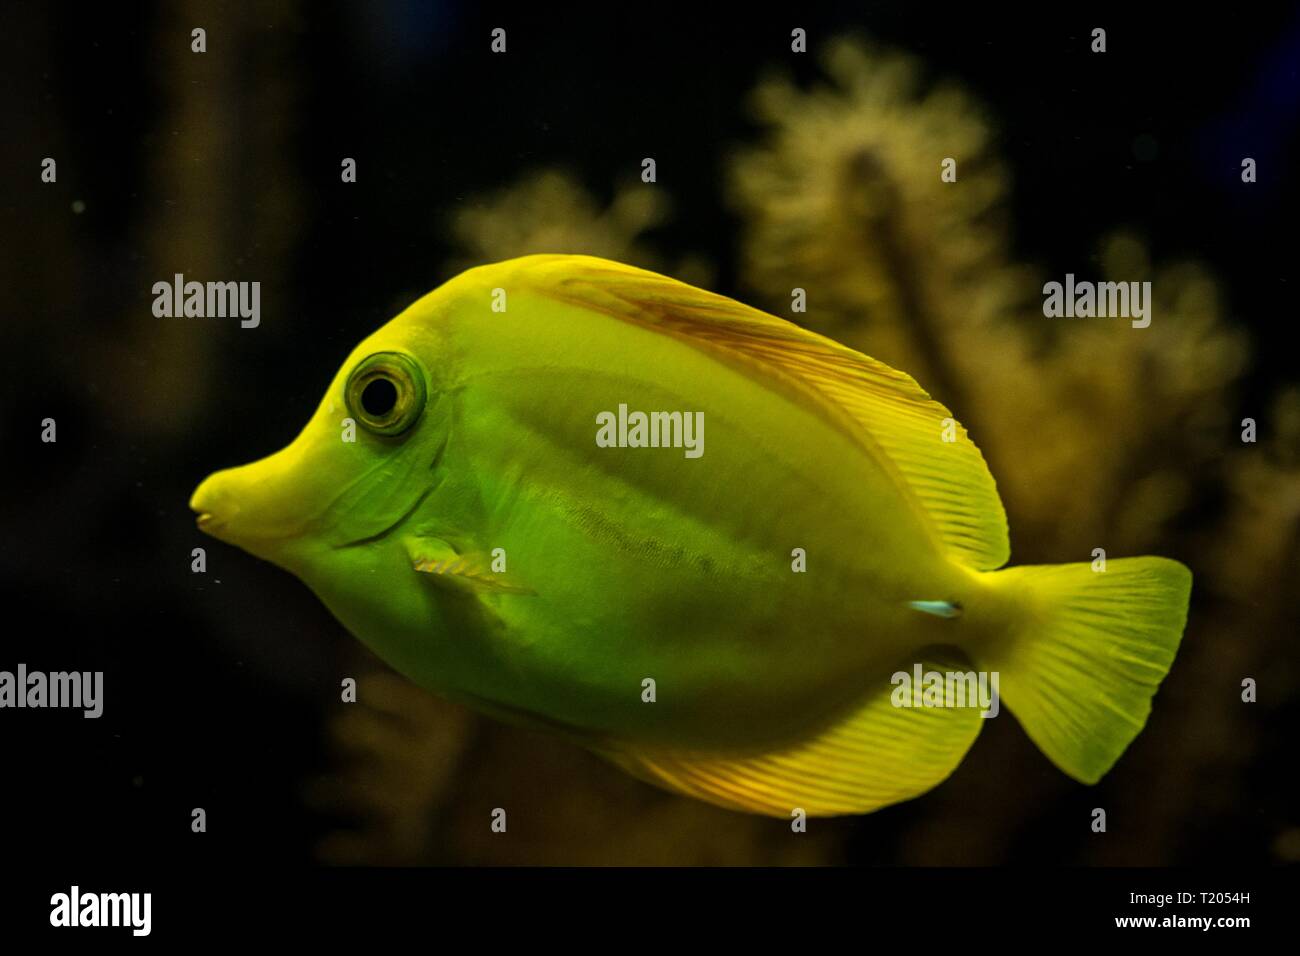 Tang, Zebrasoma flavescens (jaune), des poissons de récifs coralliens, les poissons marins d'eau salée, beau poisson jaune avec les coraux tropicaux en arrière-plan, aquarium, wallp Banque D'Images